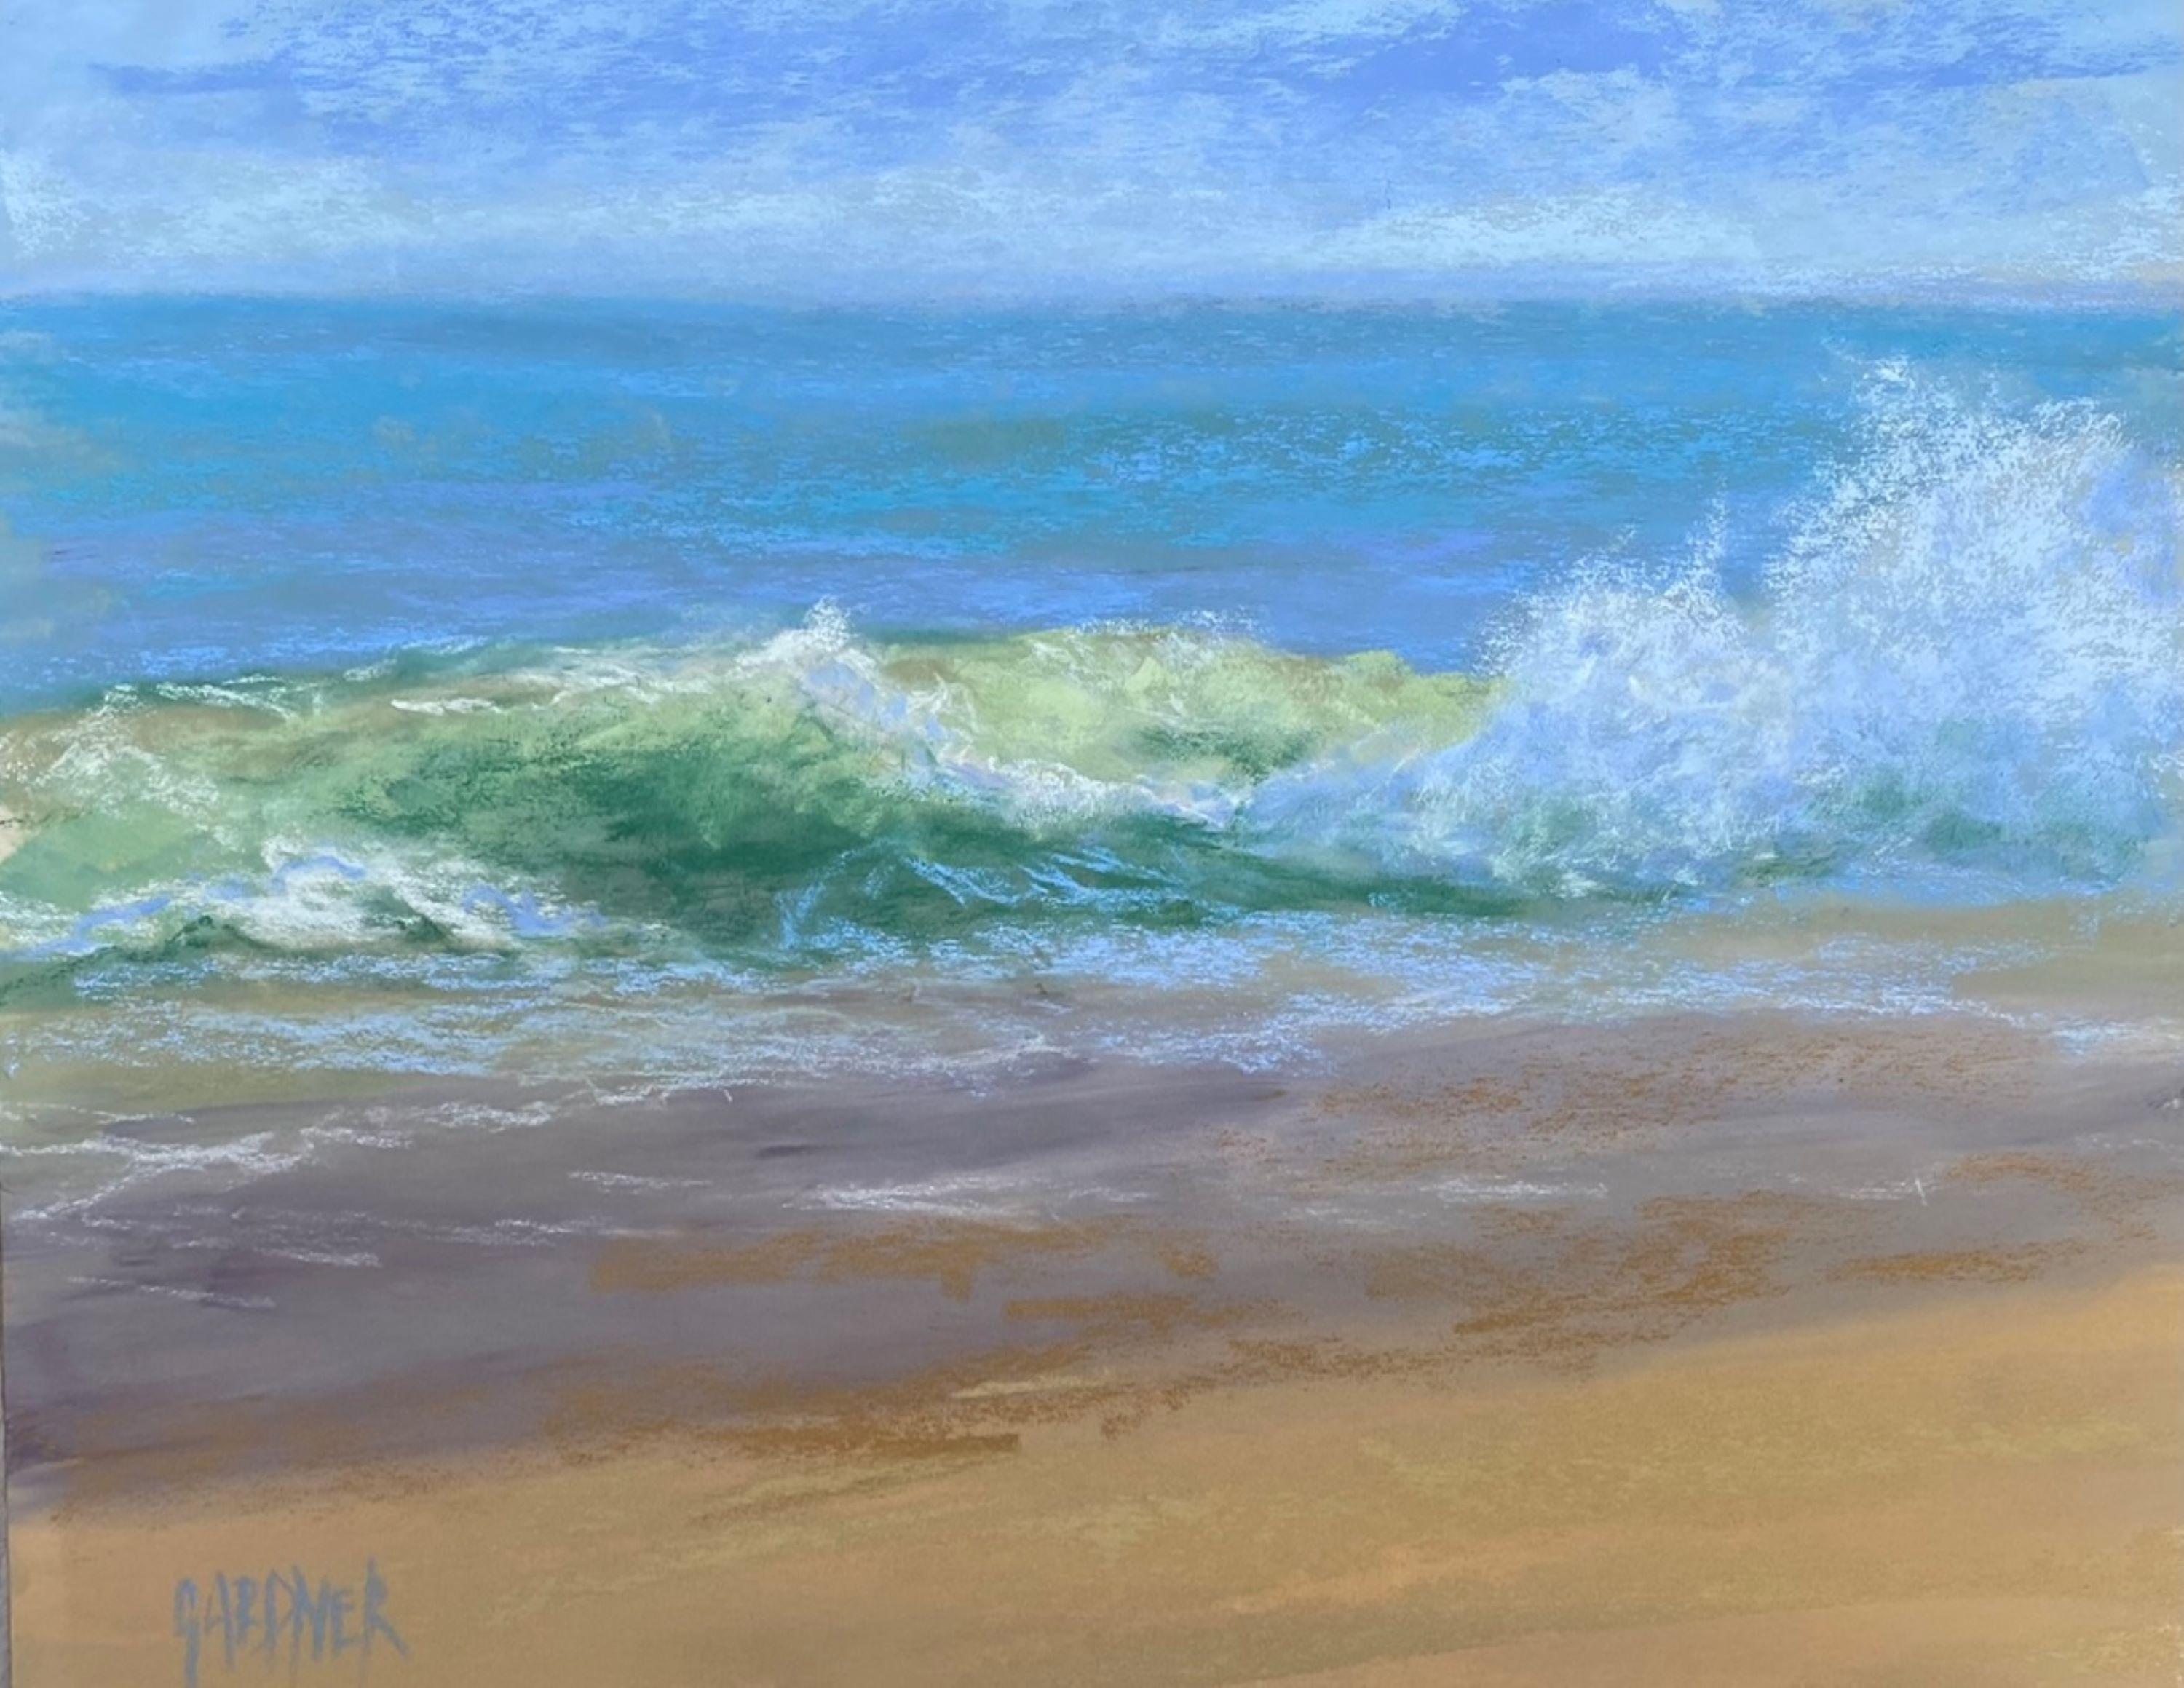 Peinture impressionniste originale de paysage marin au pastel sur panneau, Incoming, 2021